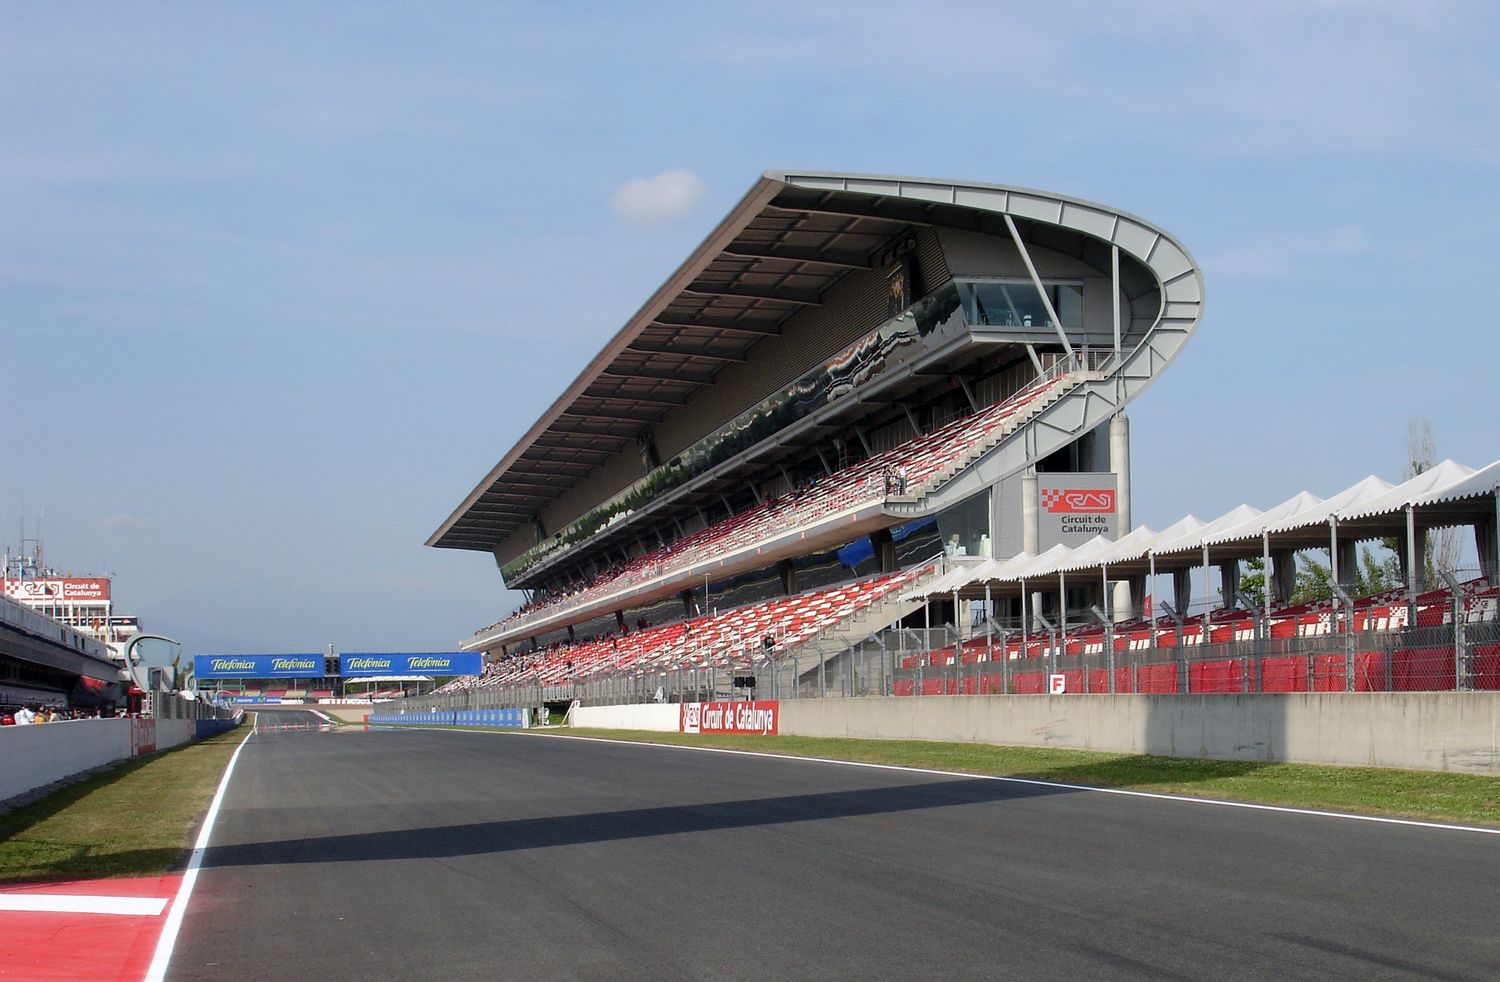 Il circuito di Barcellona è stato confermato come sede dei test invernali di Formula 1 2017 (foto da: fotka.com)